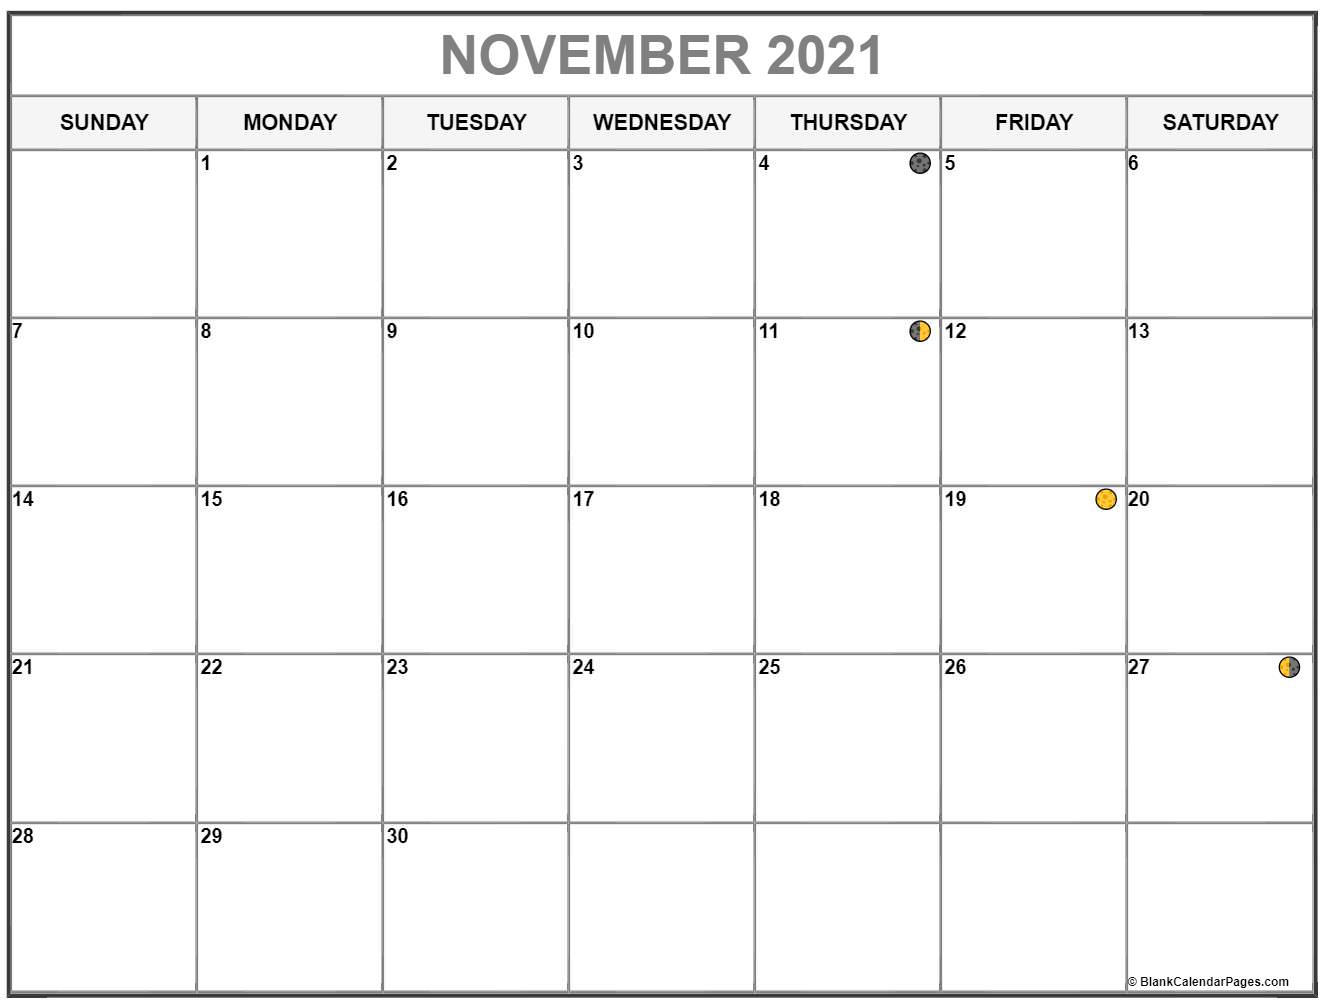 Moon Phase Calendar November 2021 | Calendar Page